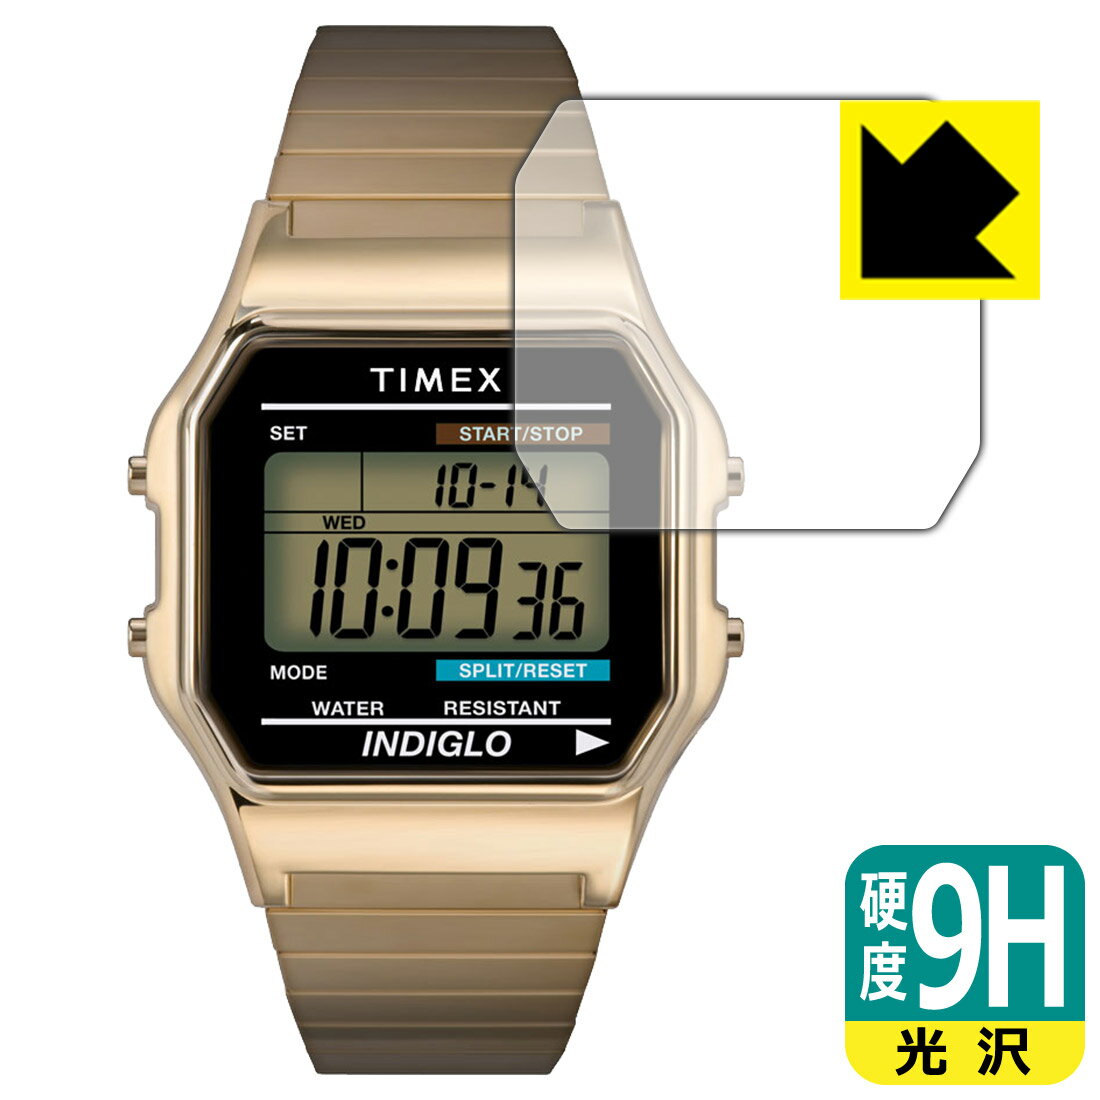 PDA工房 TIMEX Classic Digital TIMEX 80 T78587 